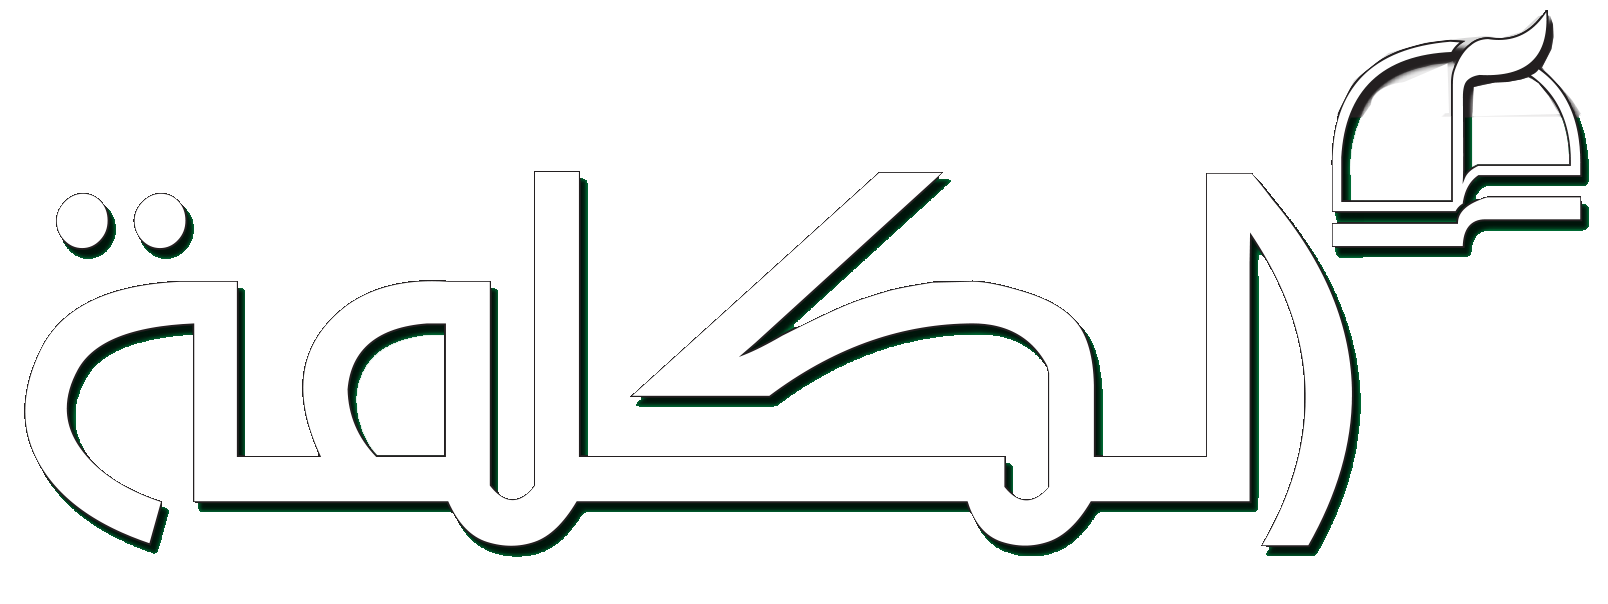 kalema logo